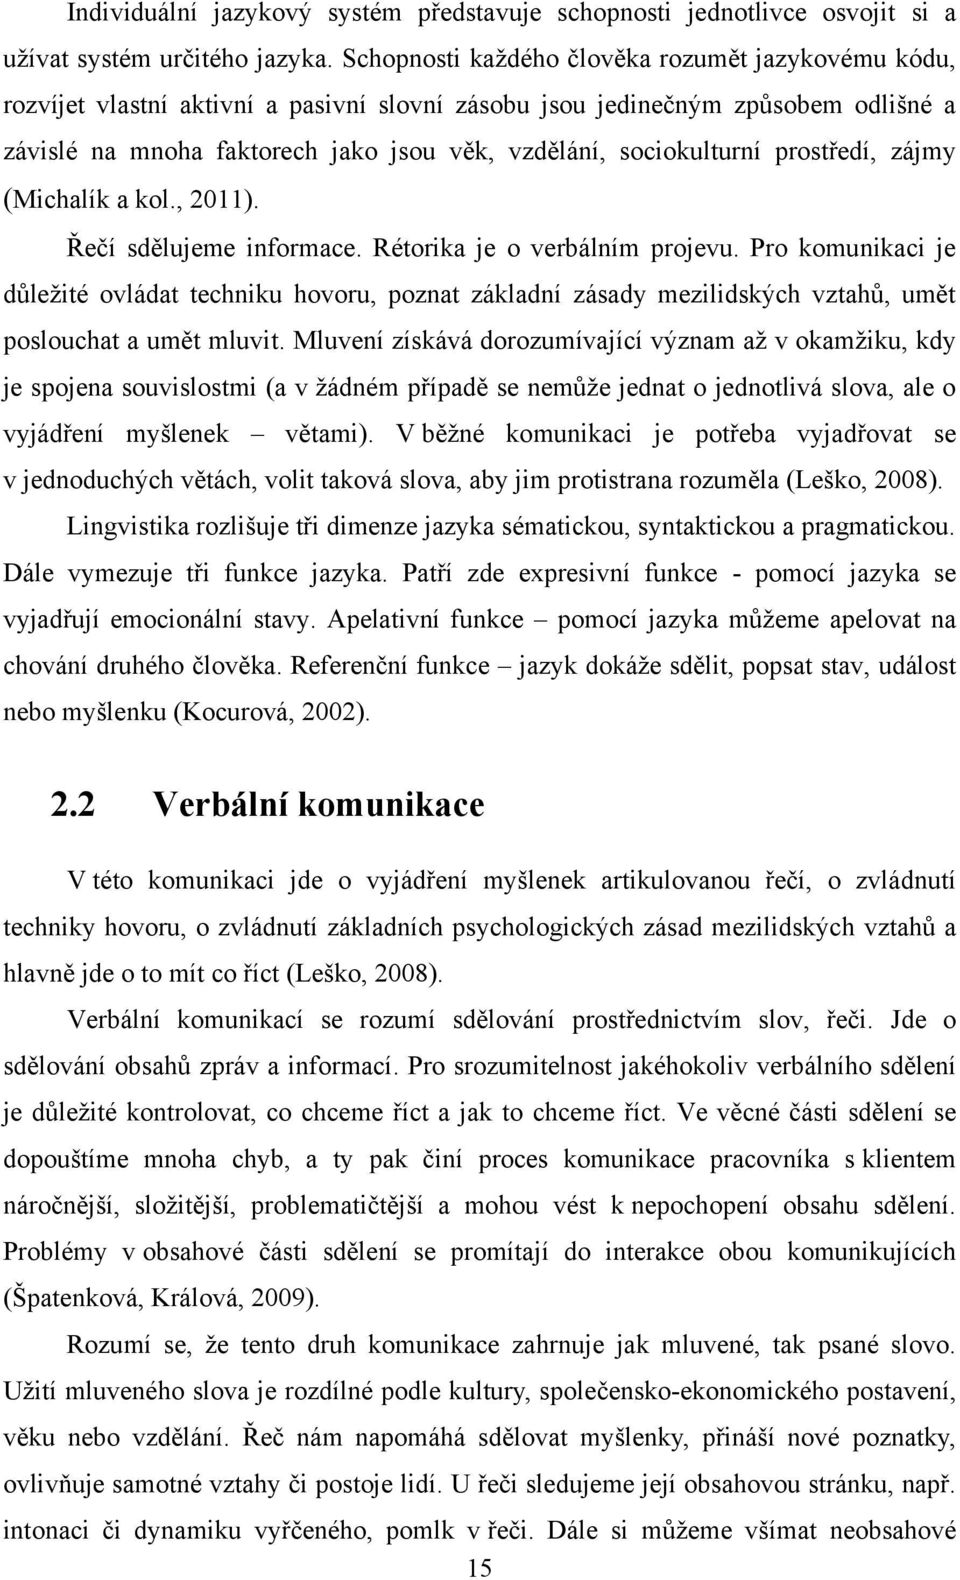 sociokulturní prostředí, zájmy (Michalík a kol., 2011). Řečí sdělujeme informace. Rétorika je o verbálním projevu.